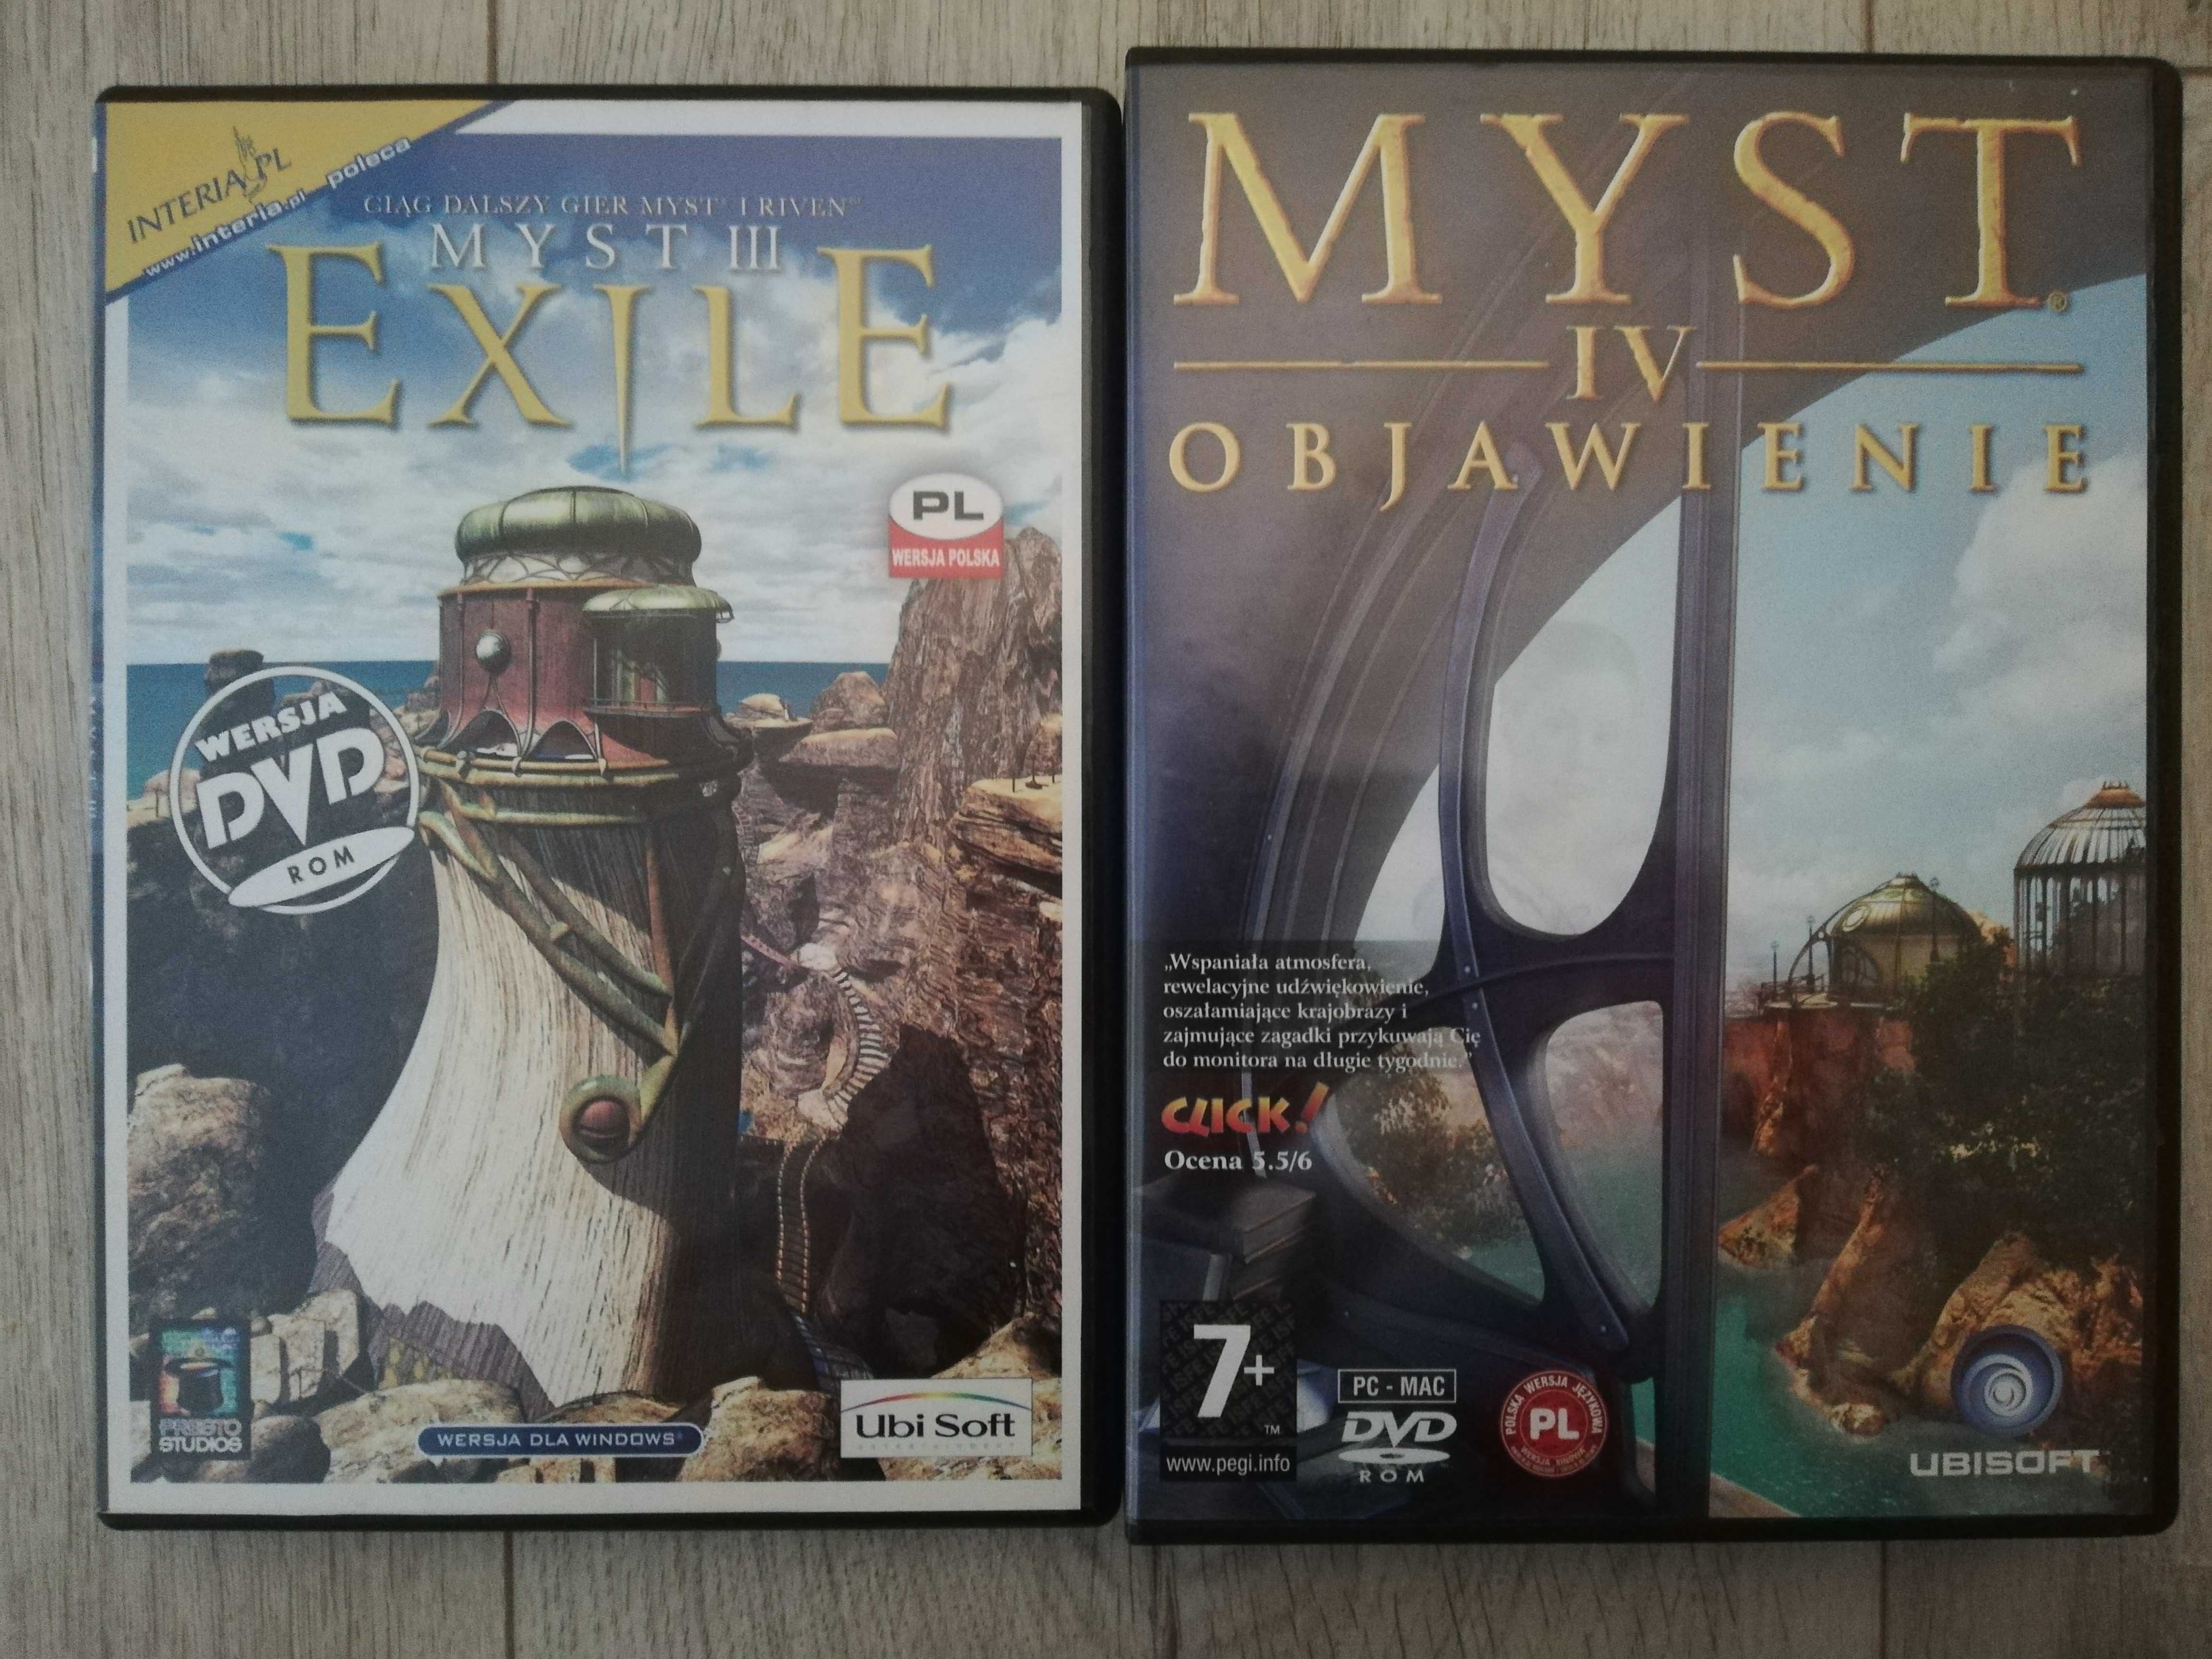 Myst III Exile i Myst IV Objawienie